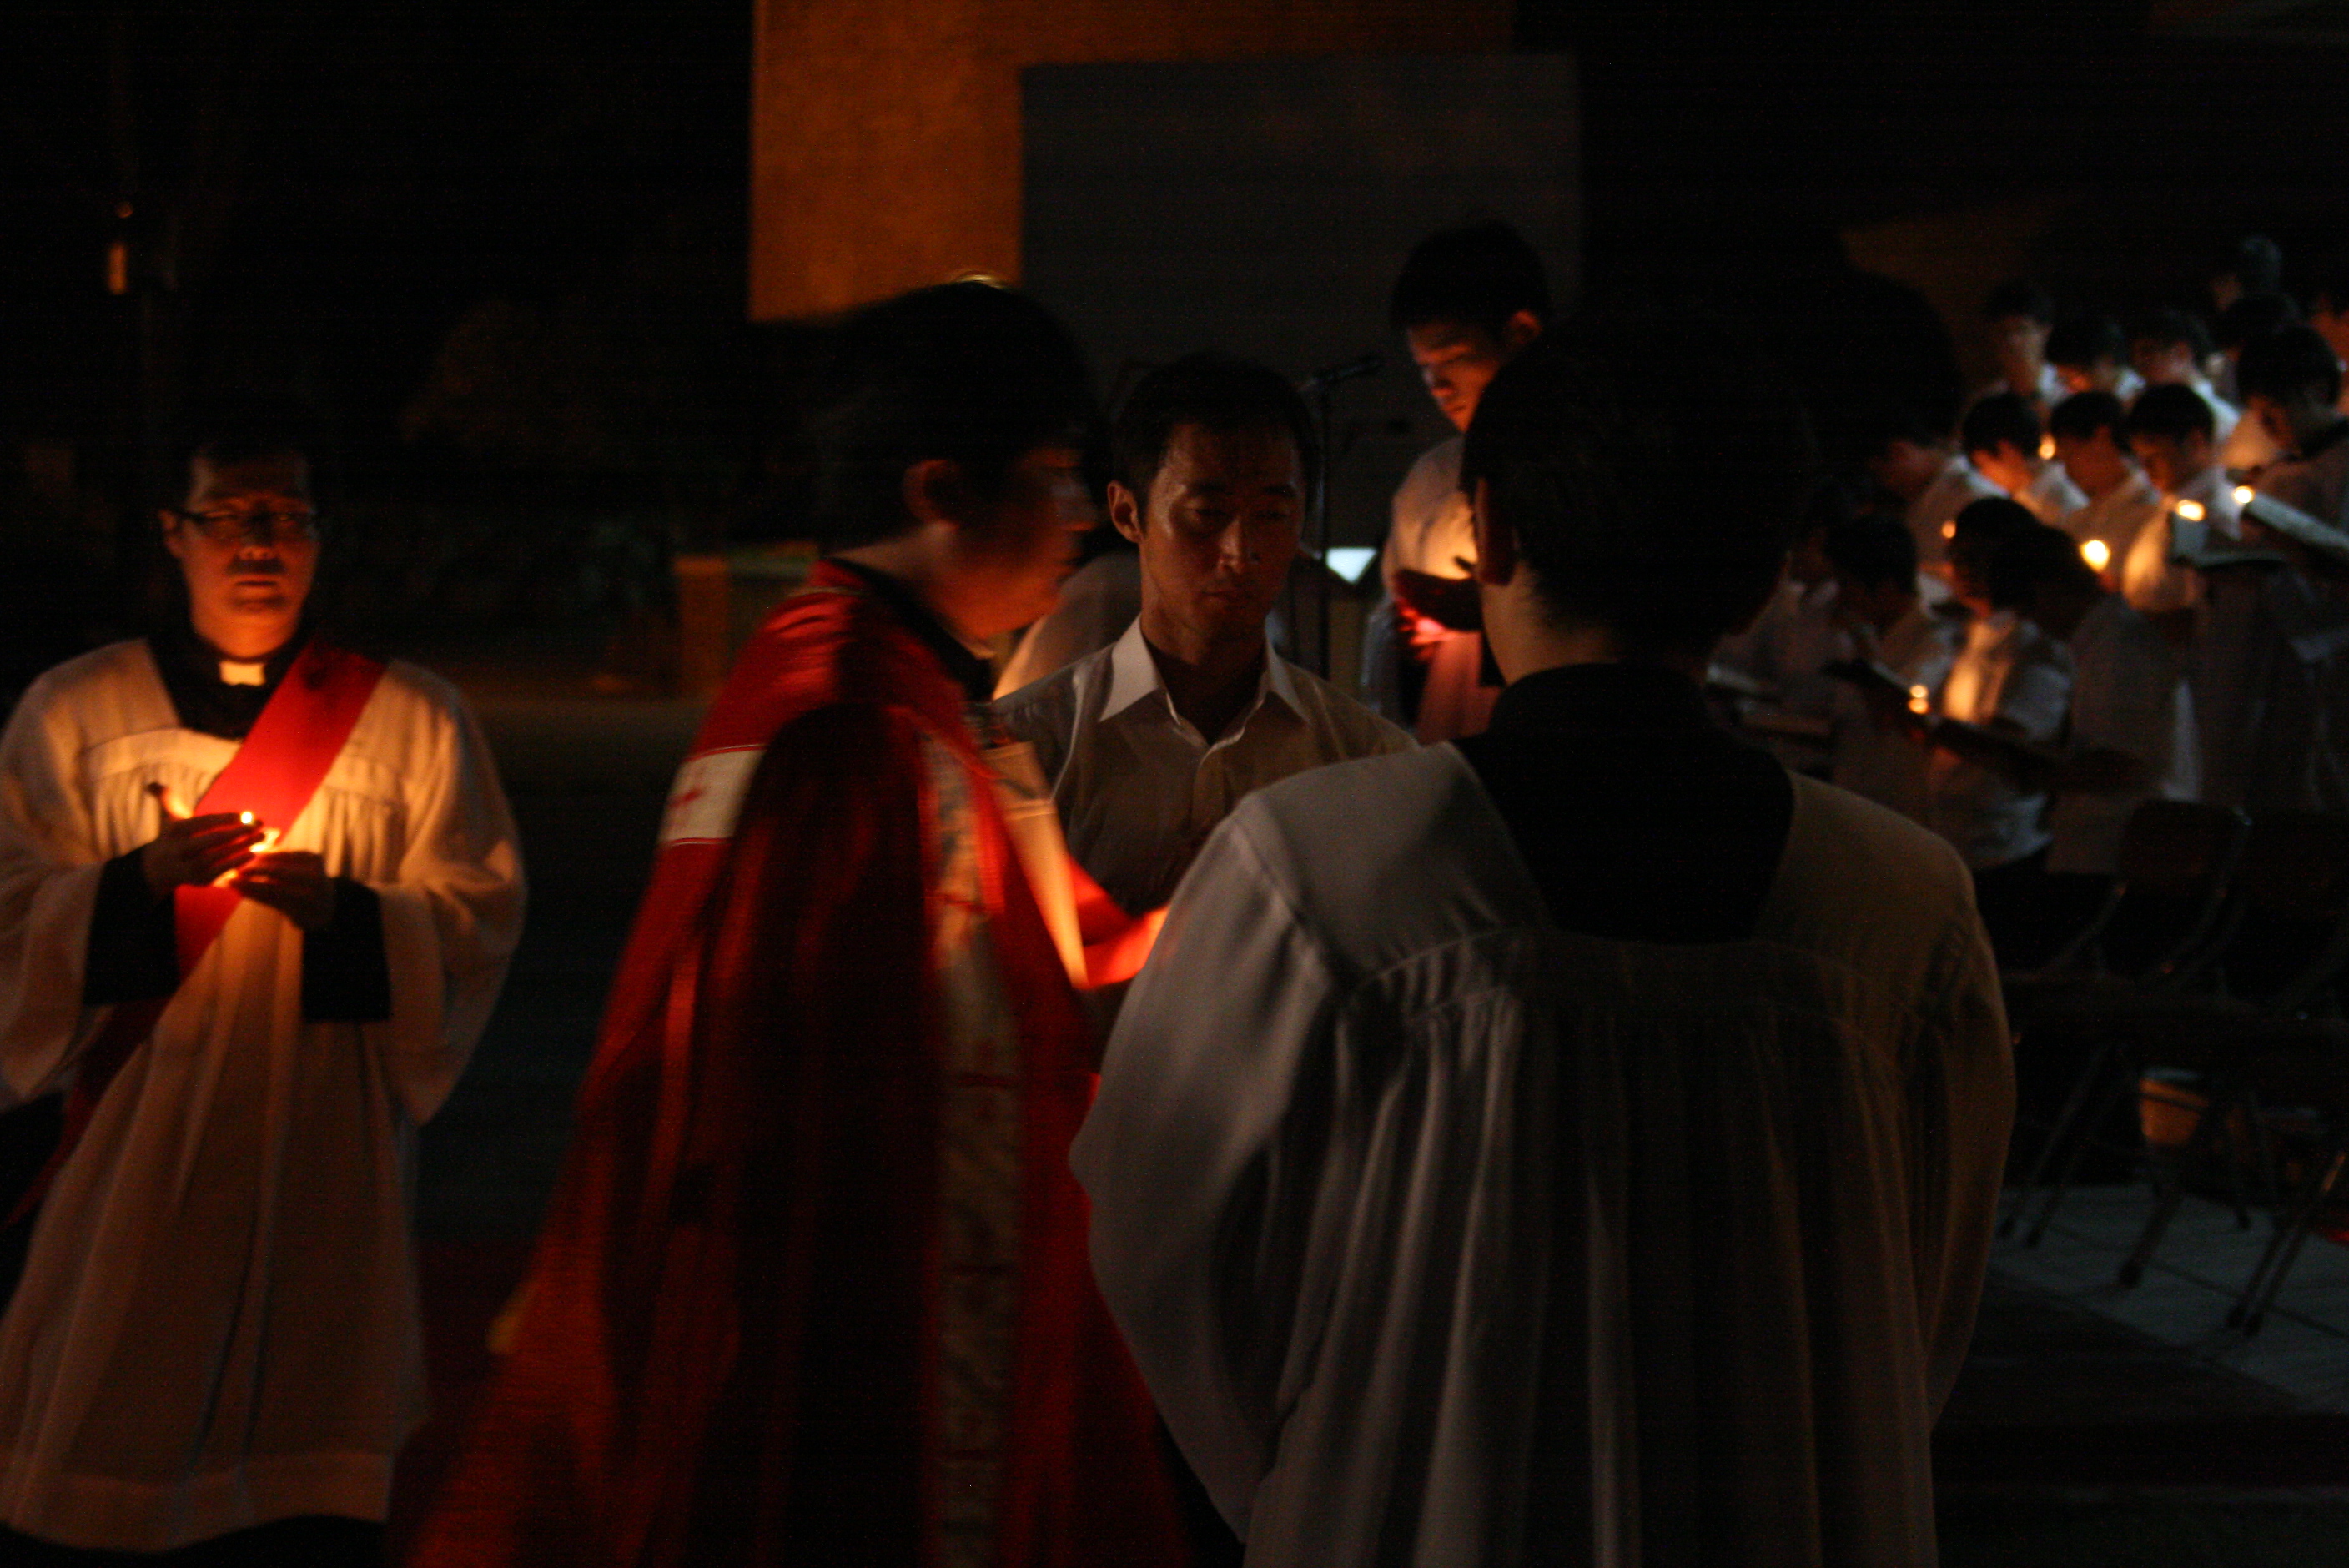 순교자의 밤(2011.9.17)의 관련된 이미지 입니다.